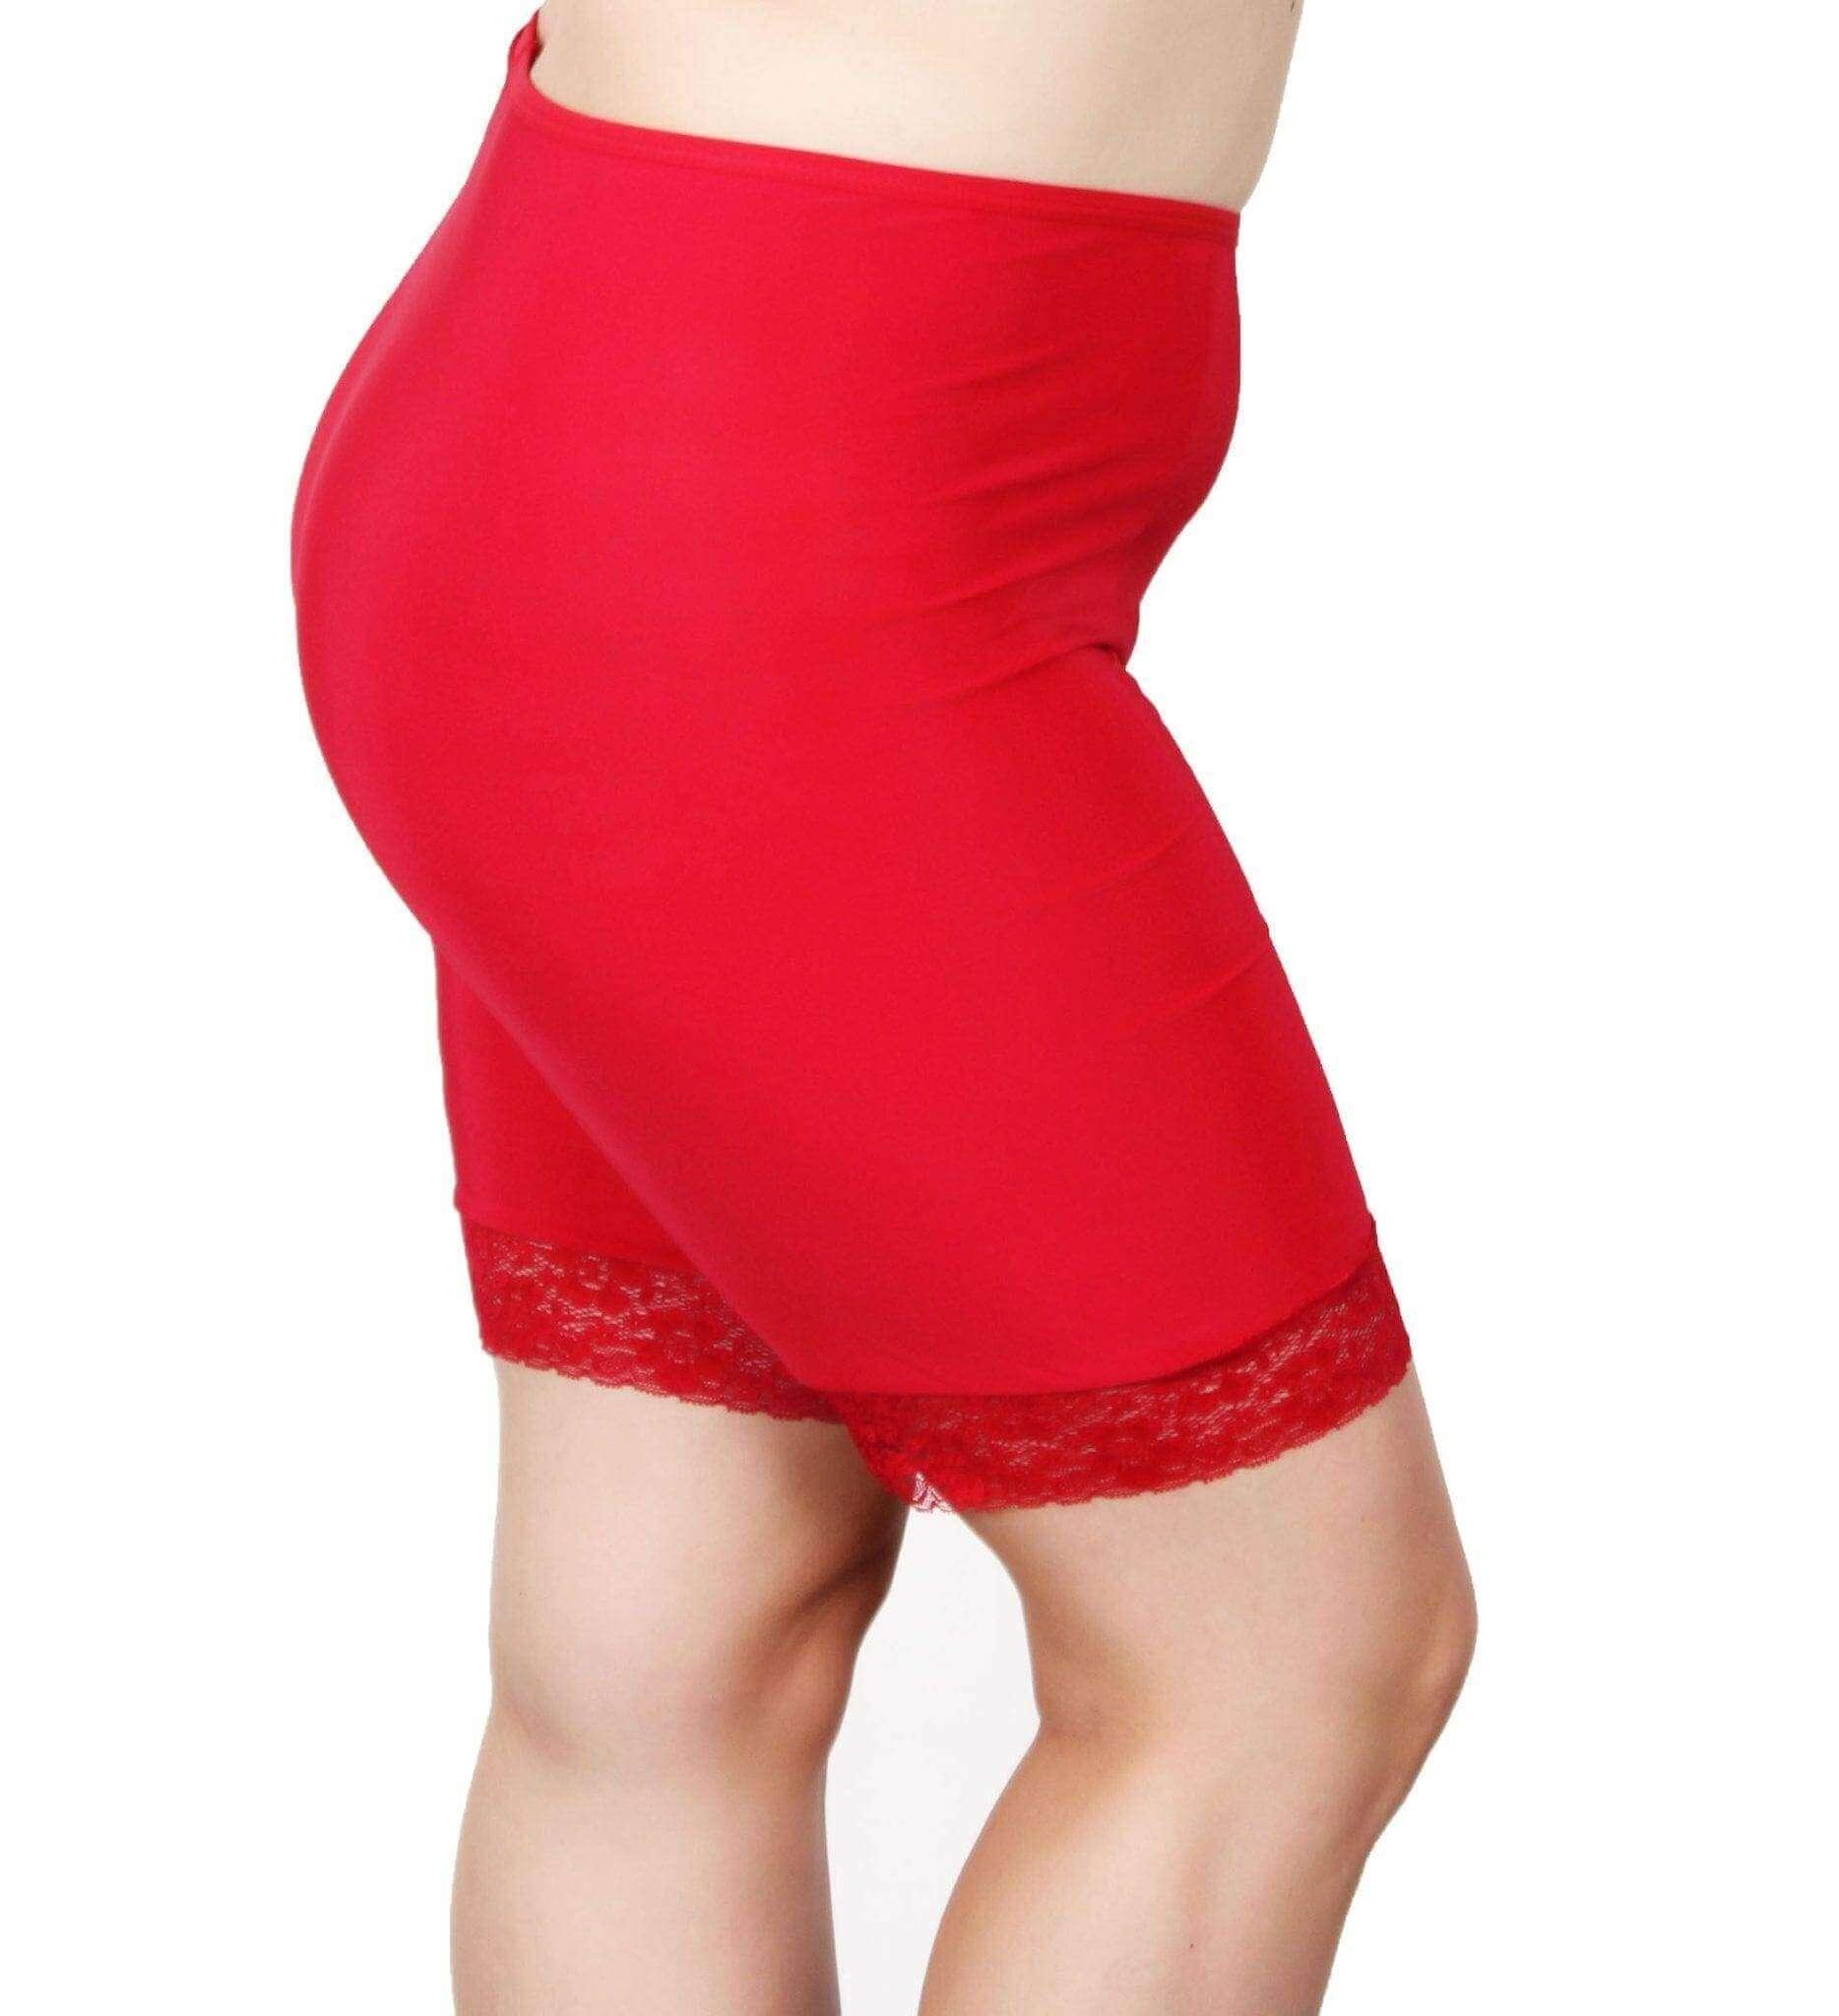 Buy Seamless Slip Shorts for Women for Under Dresses Under Skirts